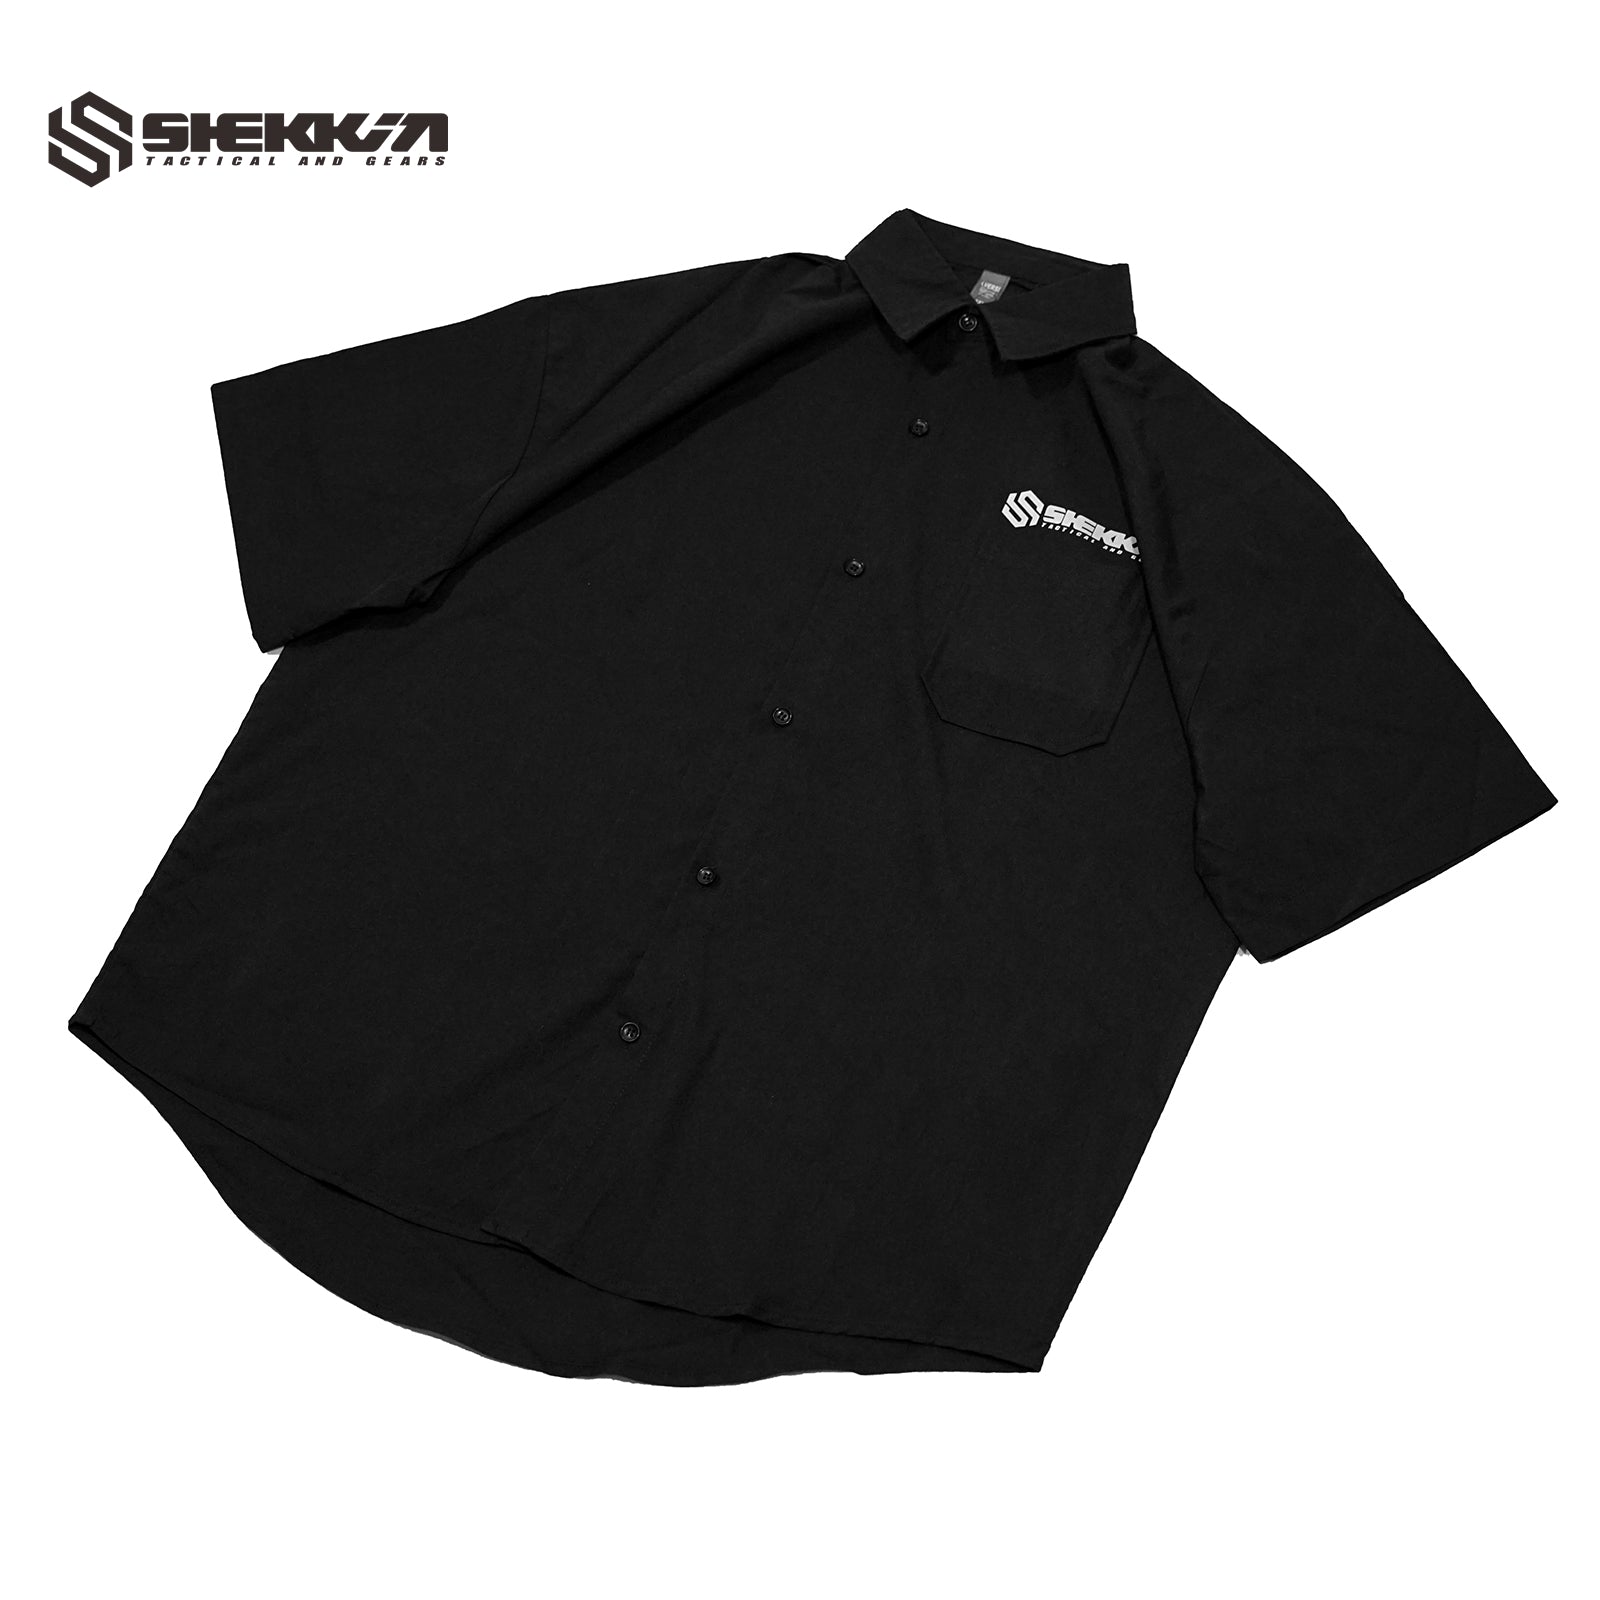 Shekkin gears Crew shirt - Shekkin Gears